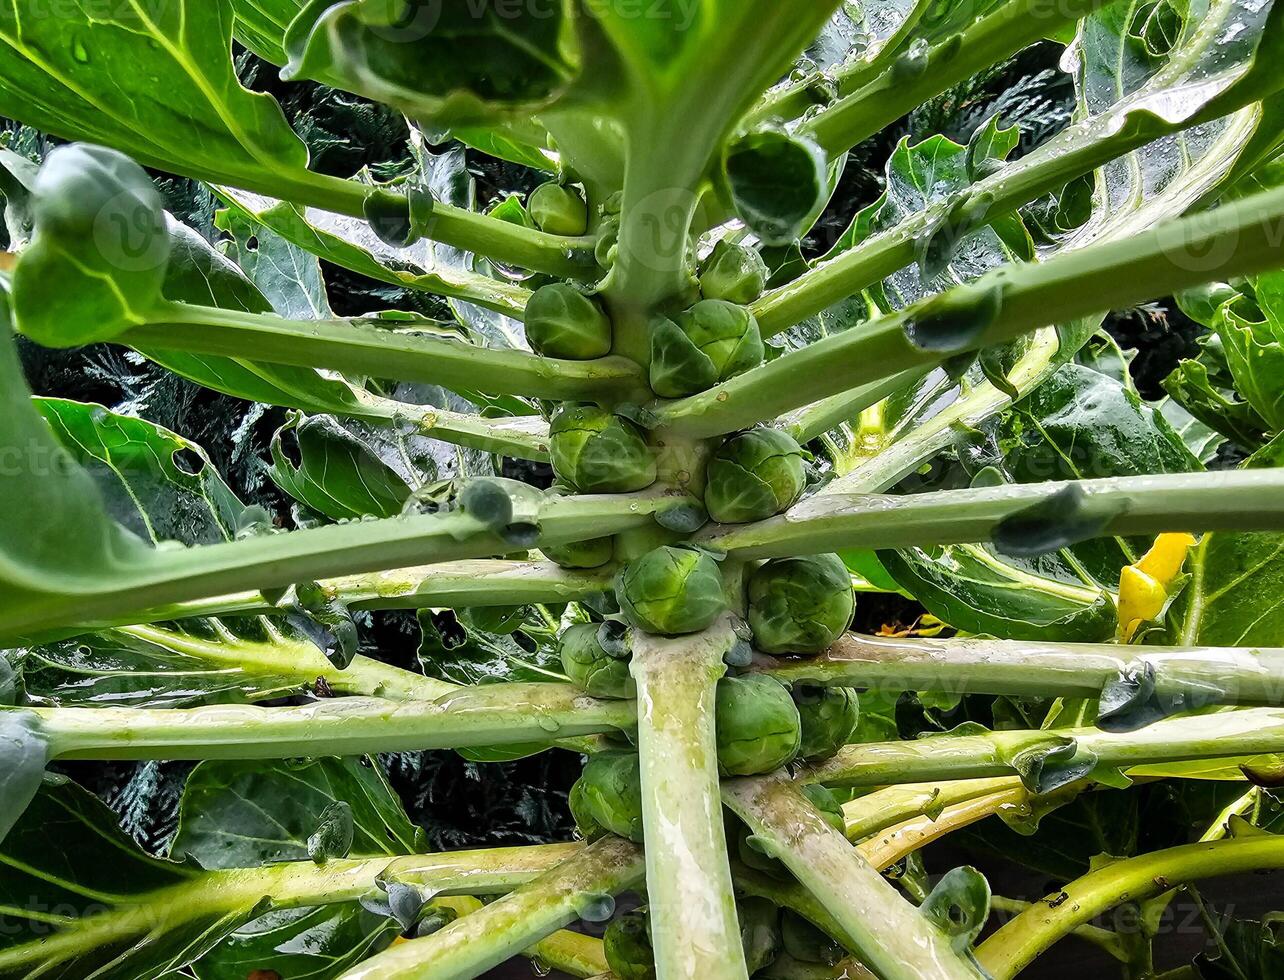 vers groen Brussel spruiten brassica oleracea van onze eigen tuin foto